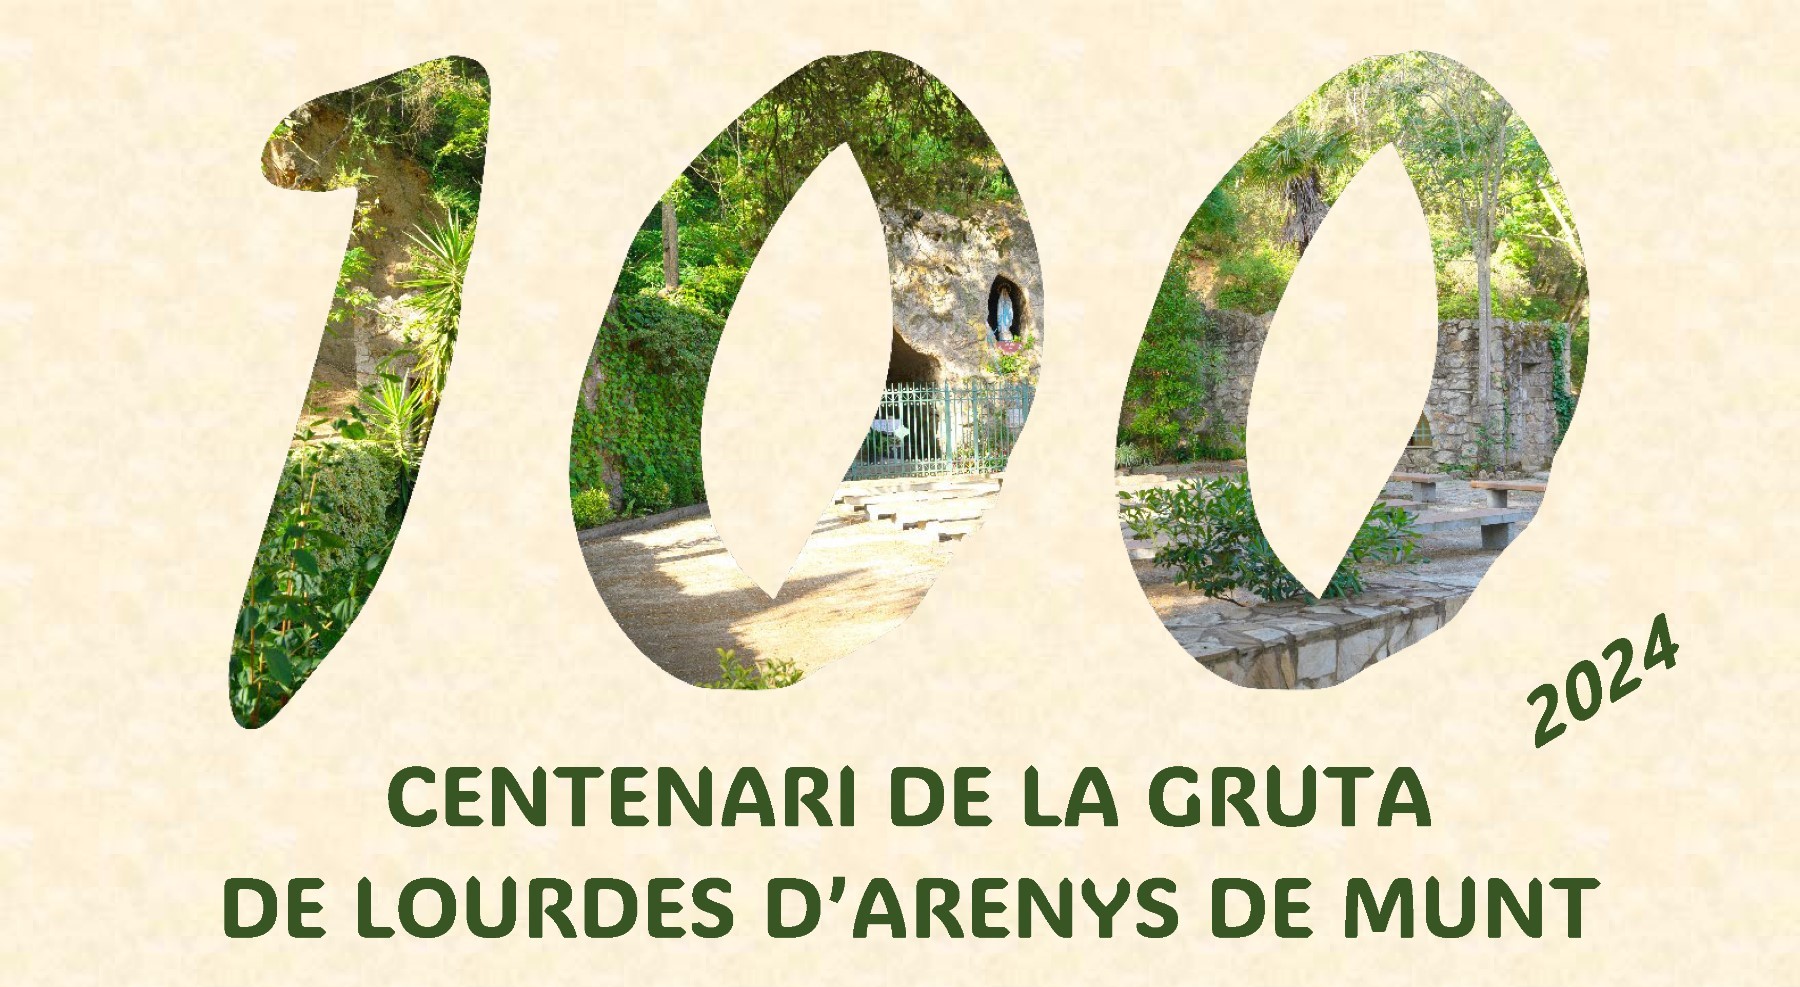 Centenari de la gruta de Lourdes d'Arenys de Munt